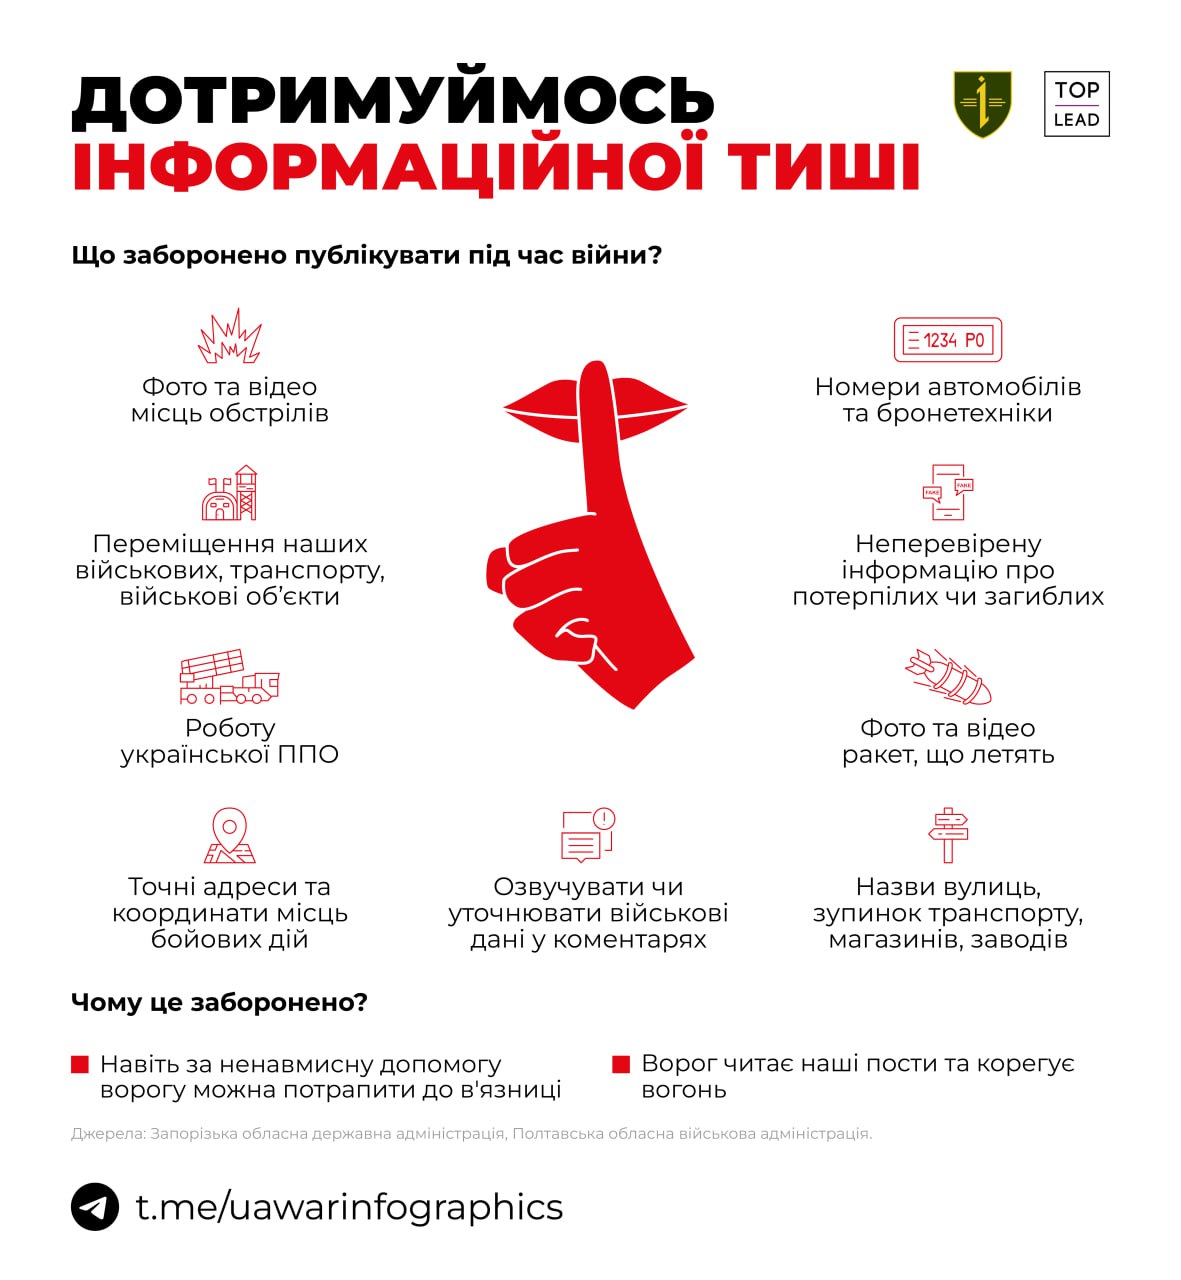 Нагадуємо, що публікувати роботу української ППО заборонено законом